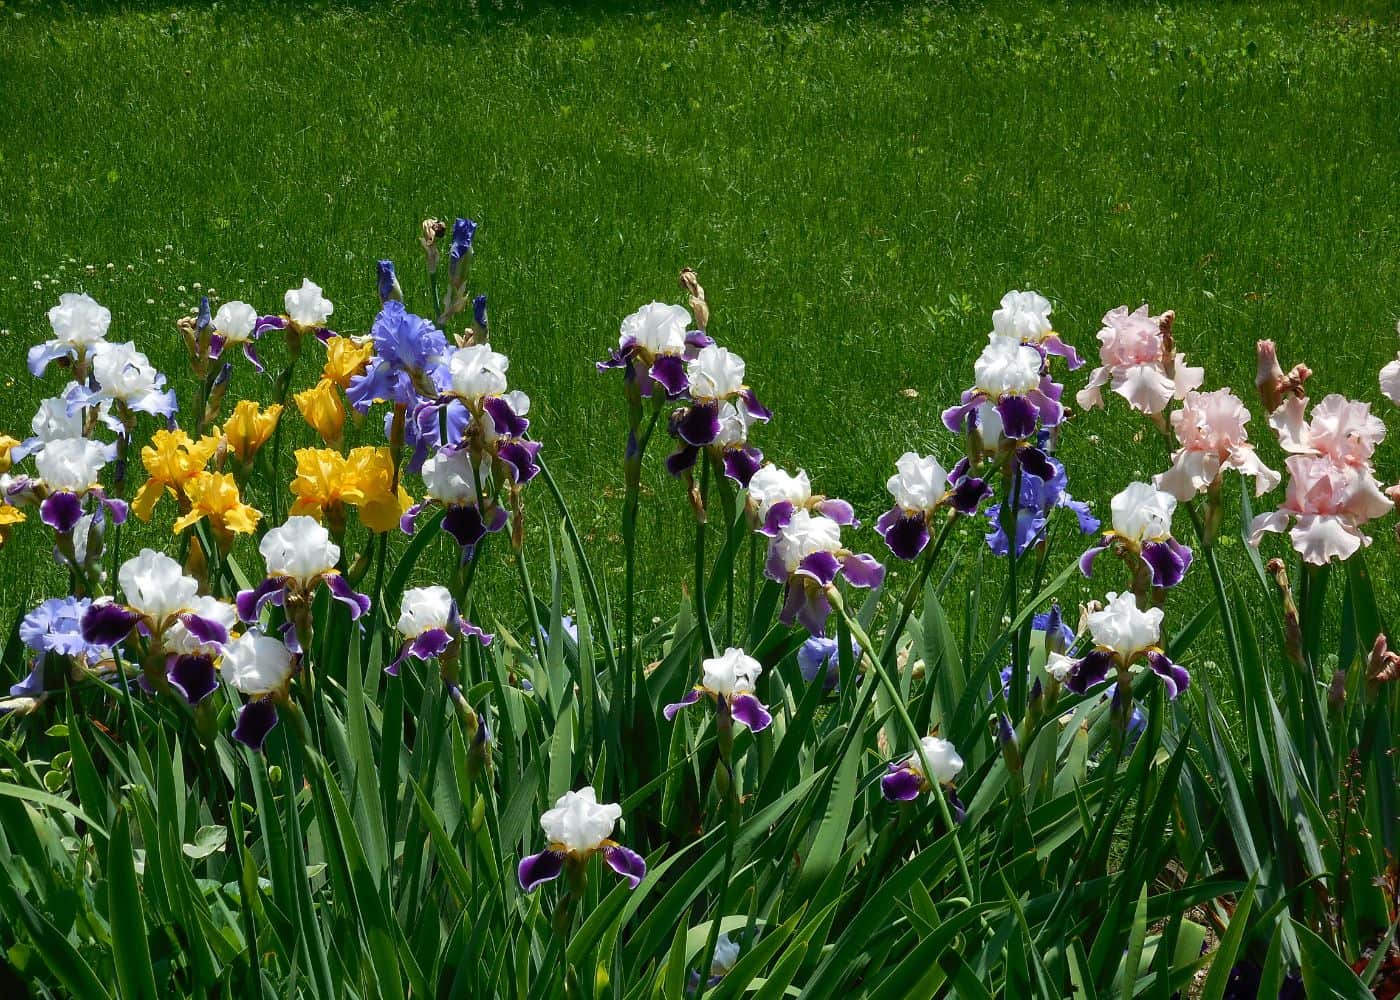 Bearded iris varieties